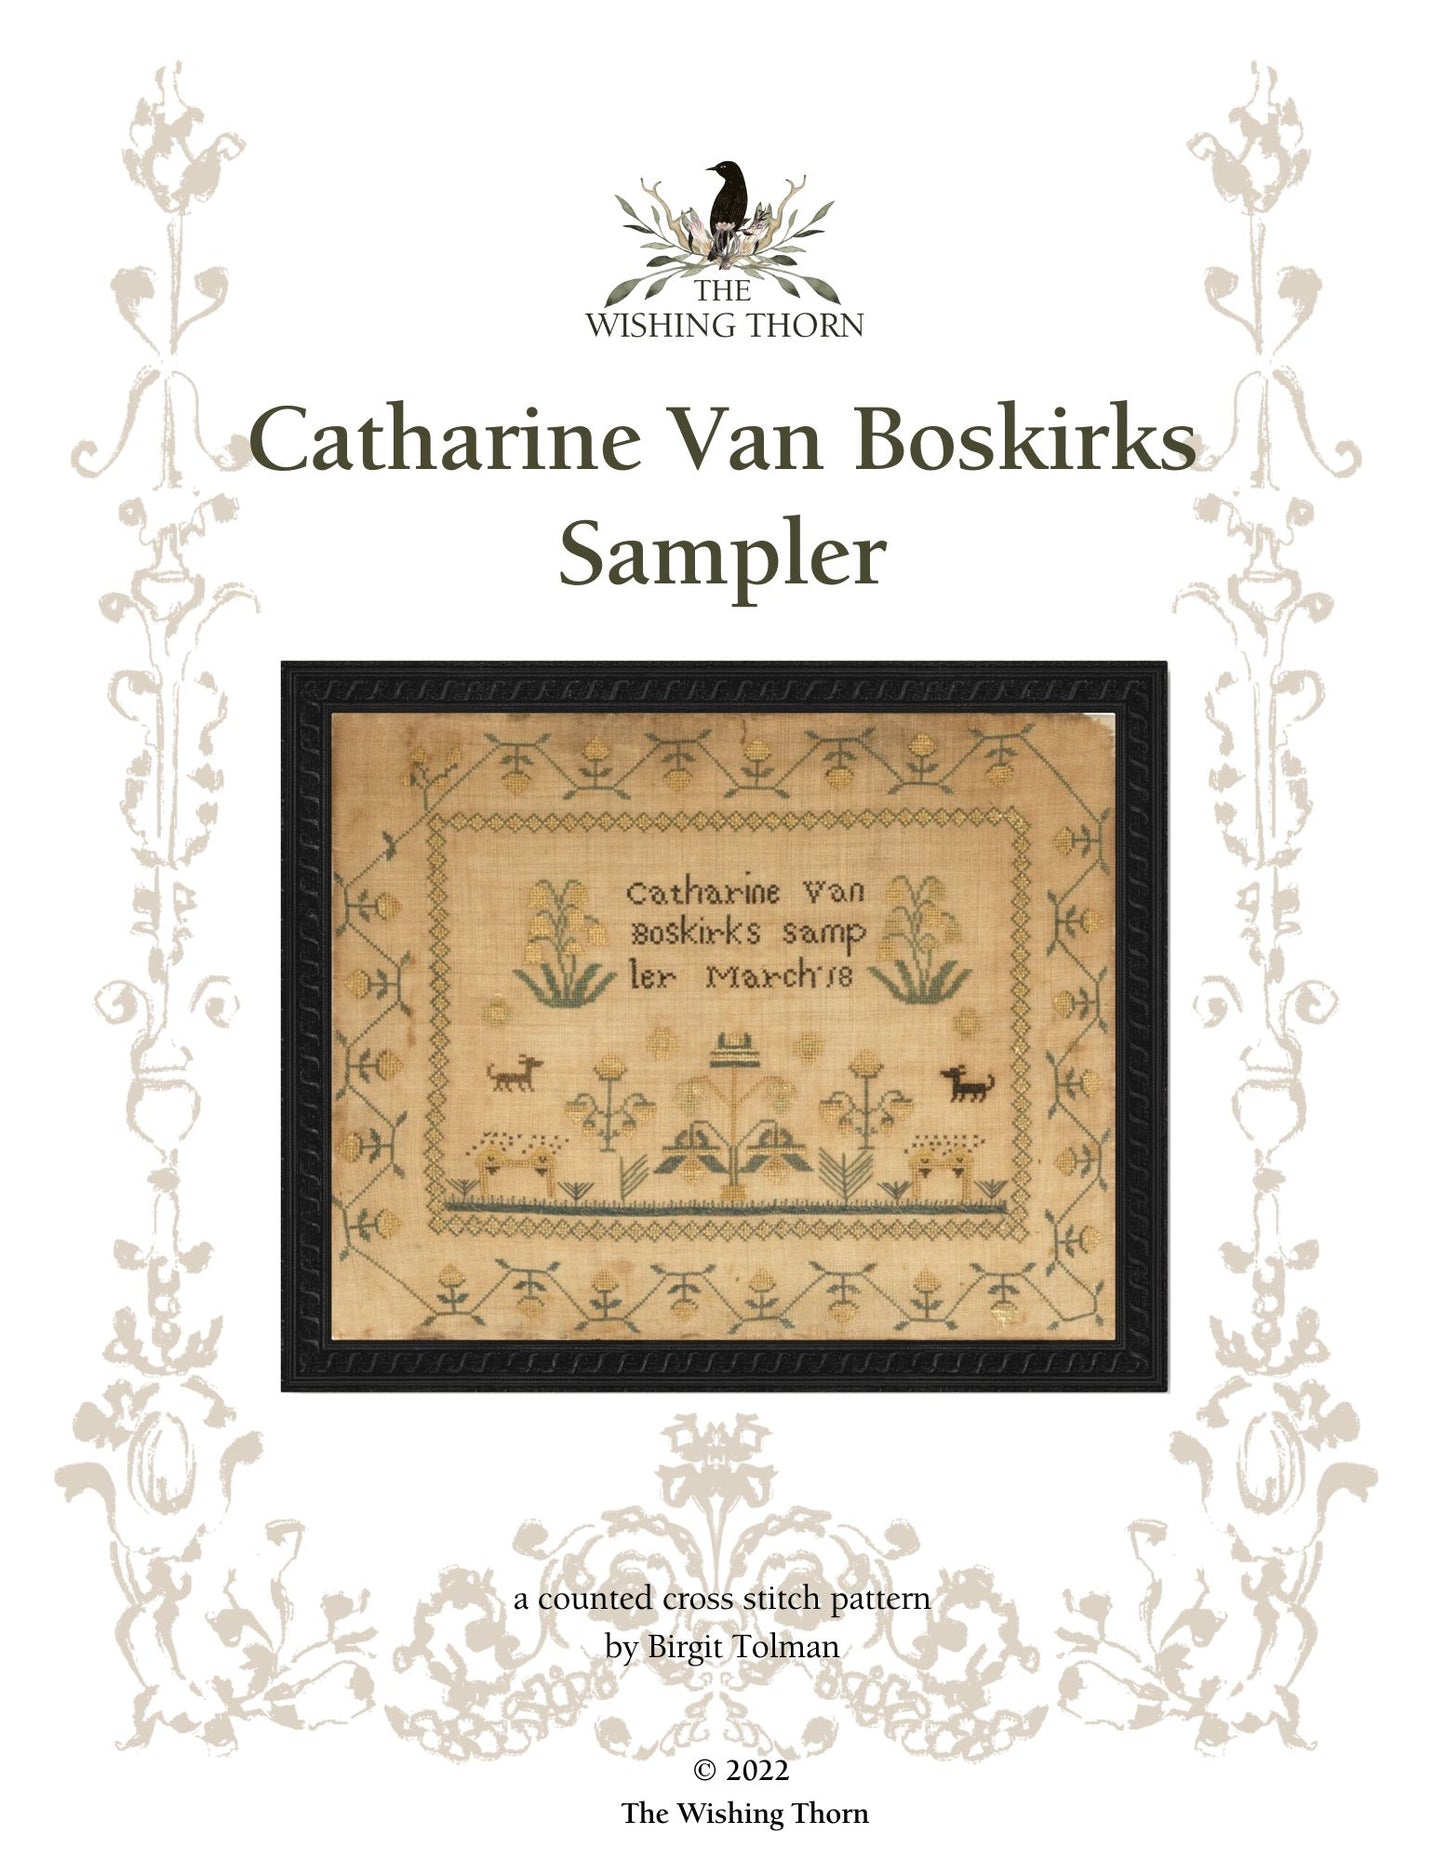 Catharine Van Boskirks 1825 Sampler Pattern